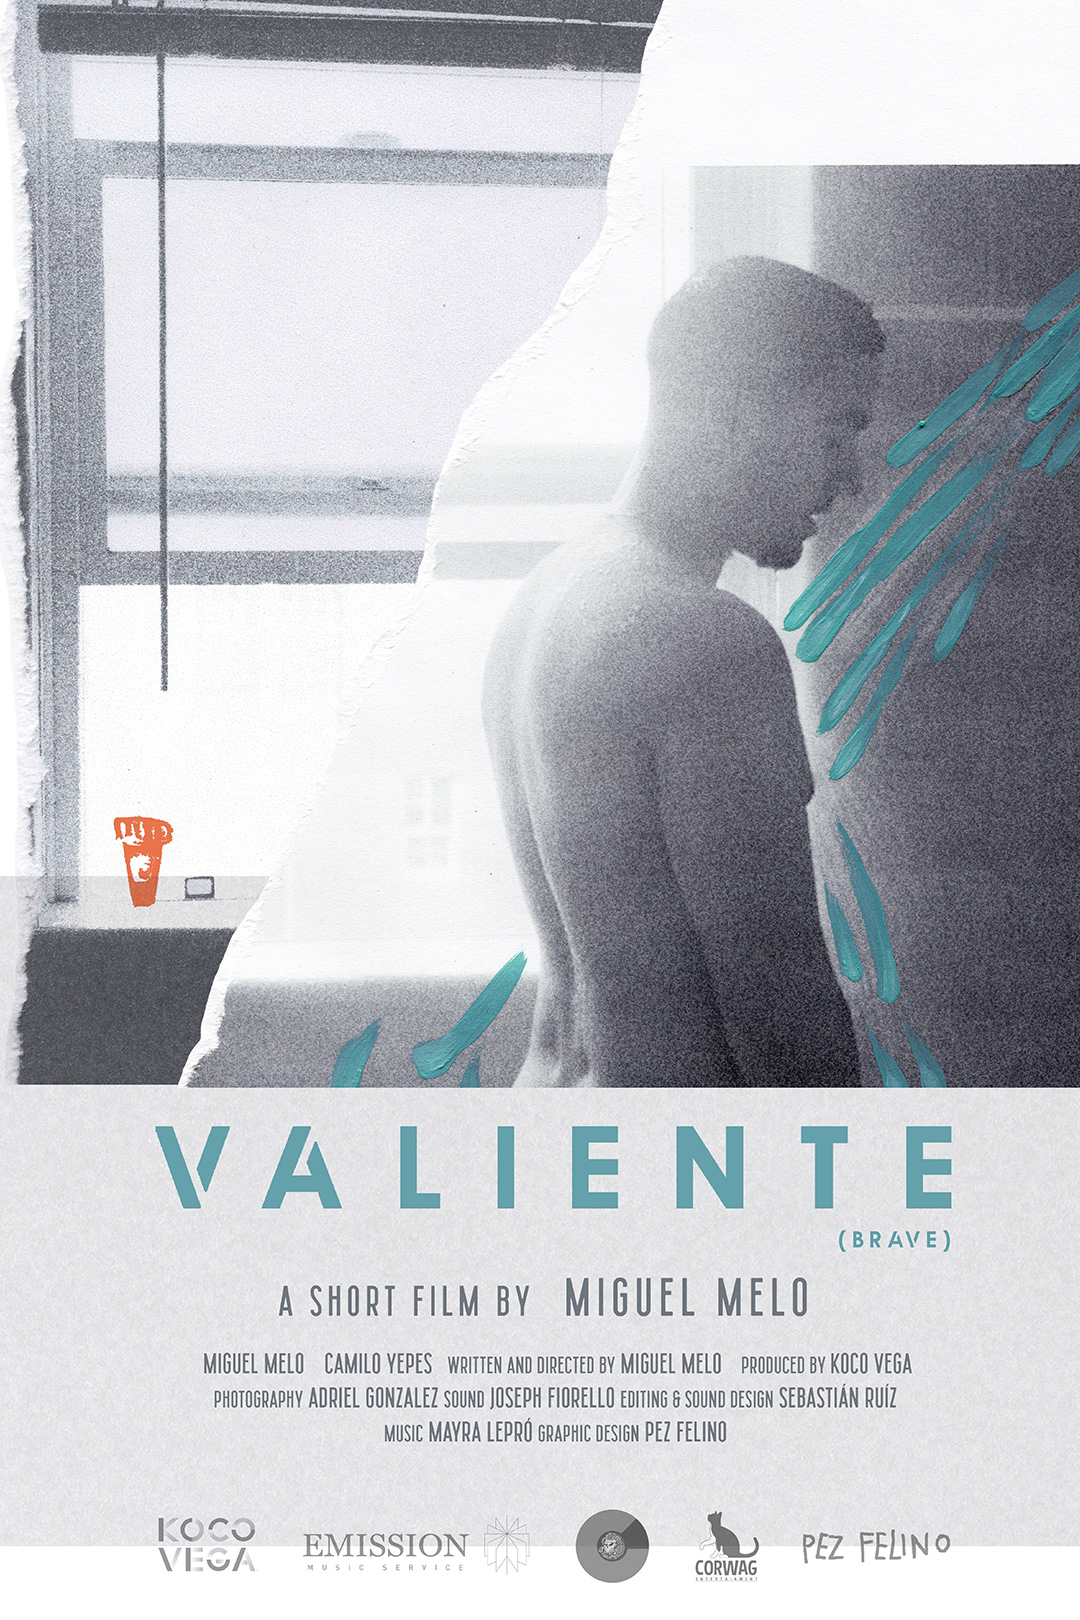 VALIENTEposteringles - Miguel Melo